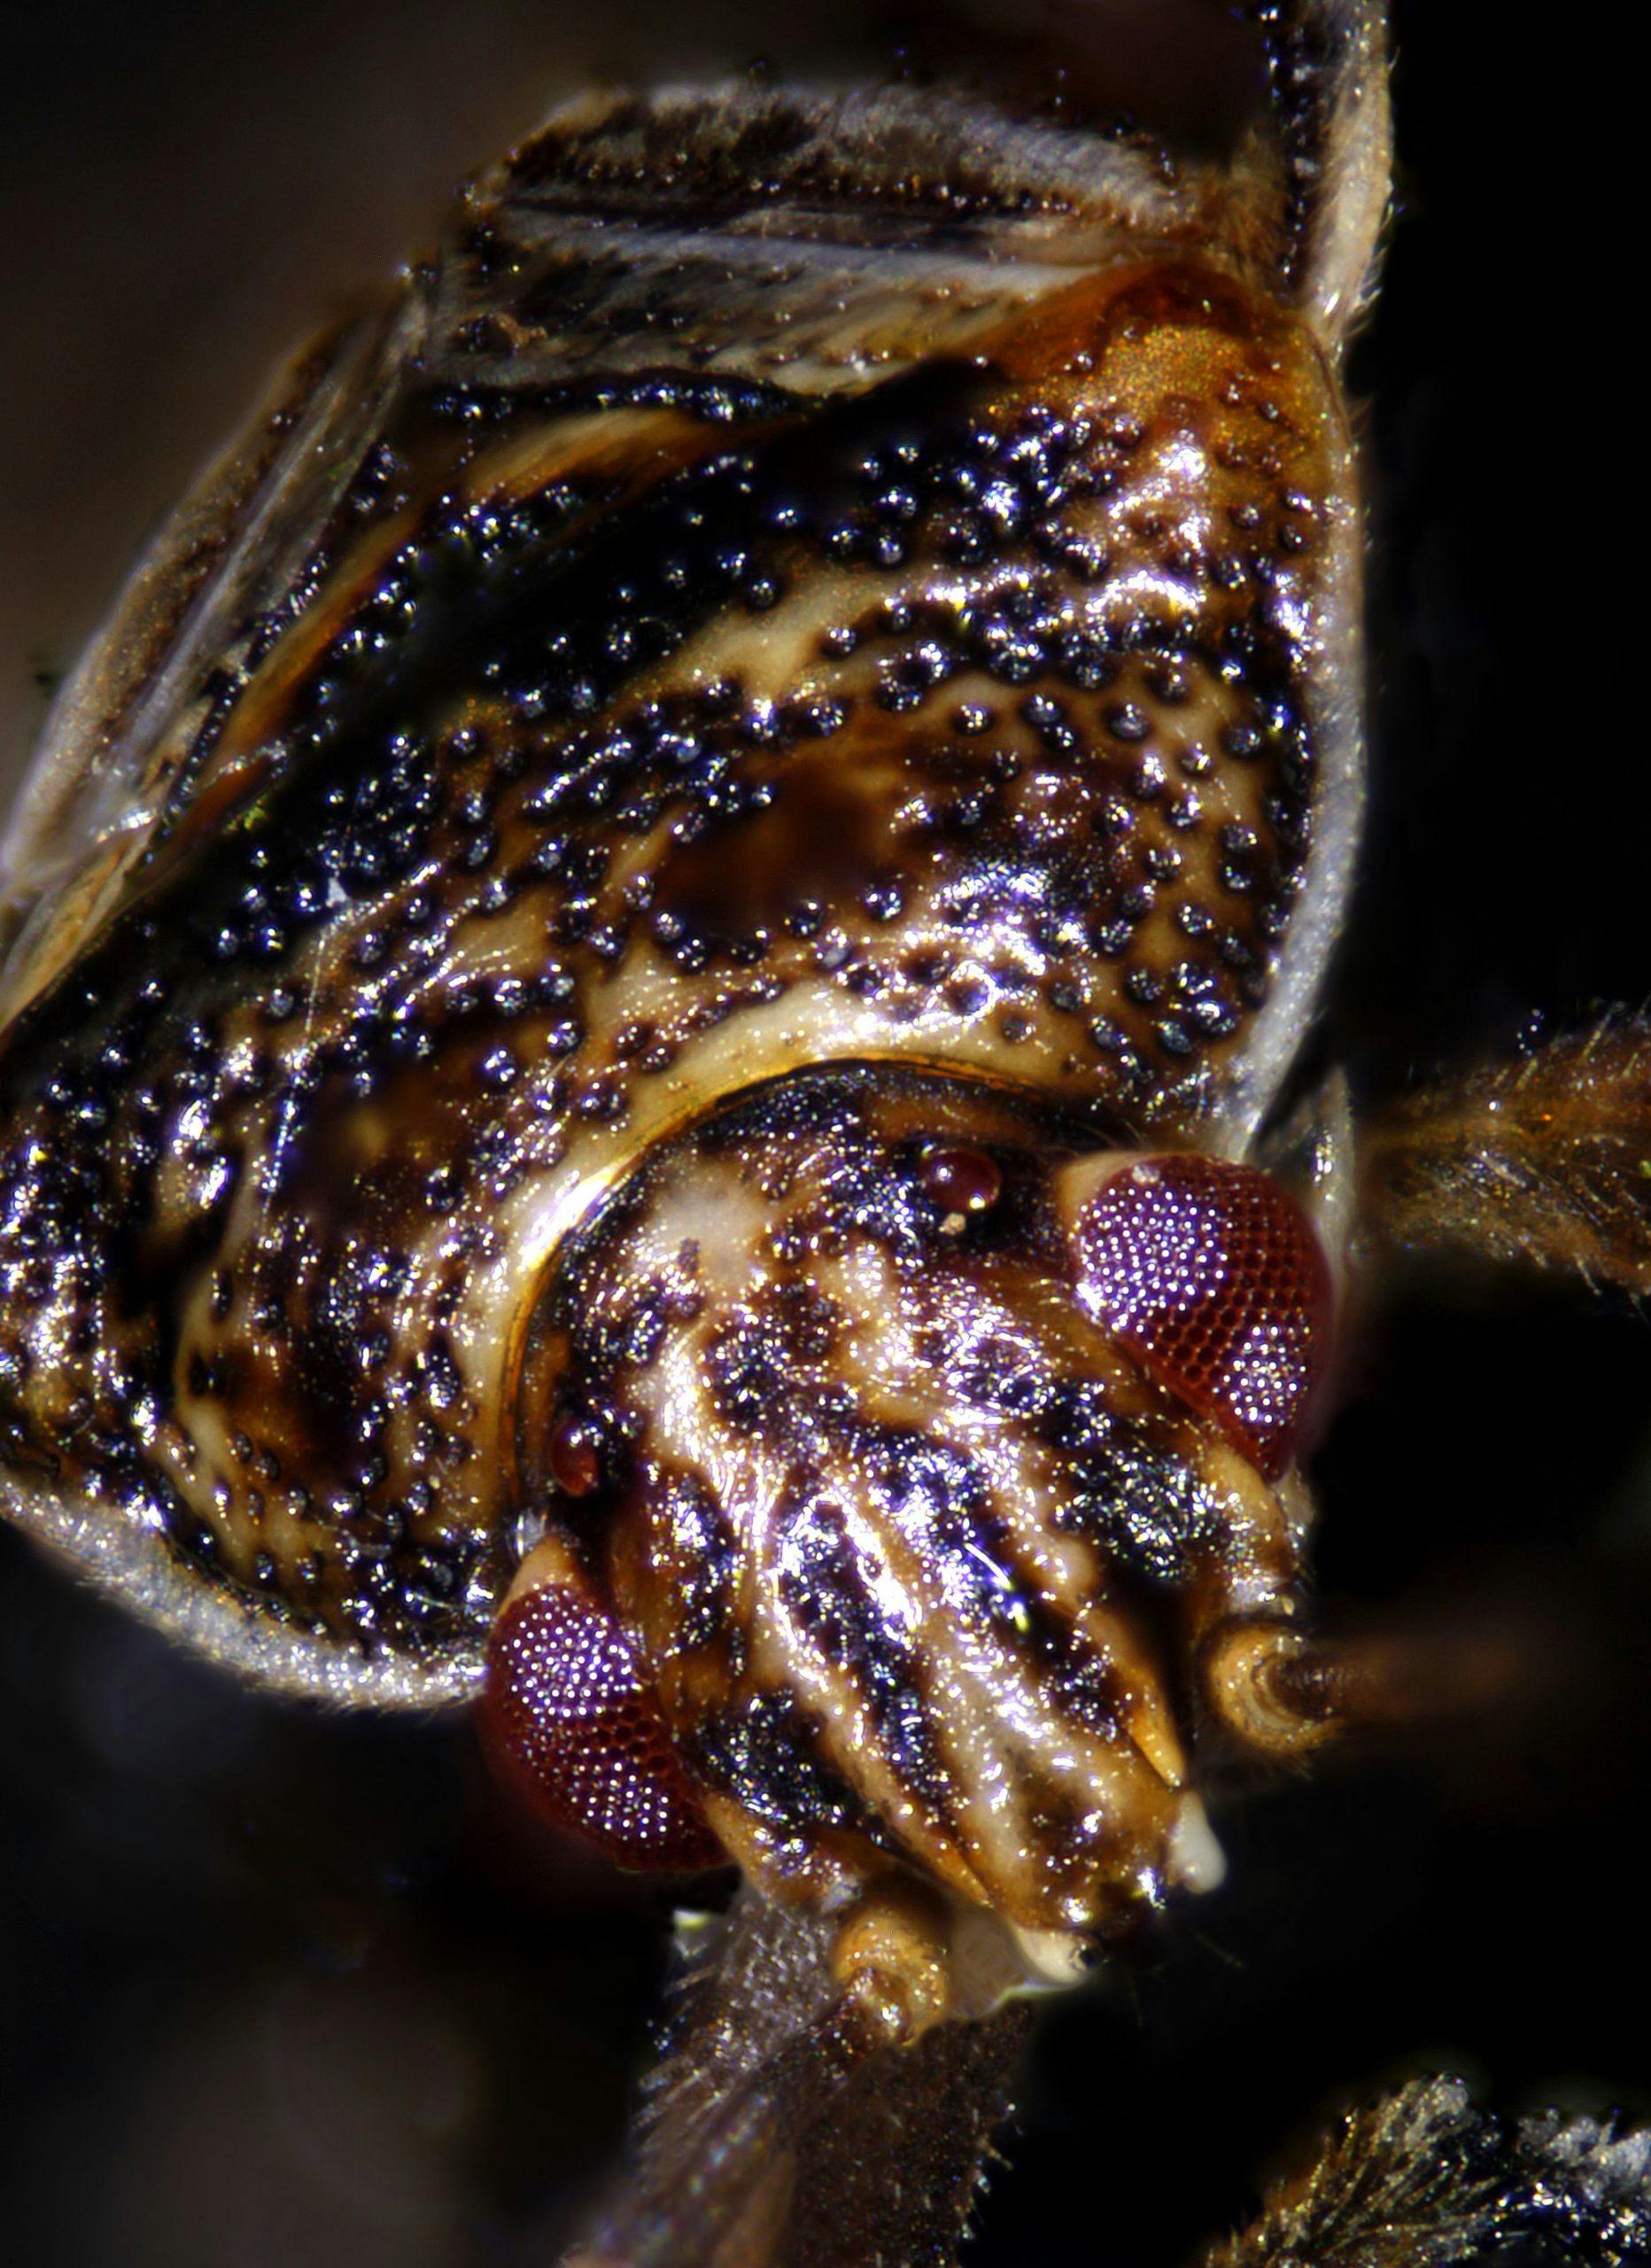 Atlanta pest control for fleas